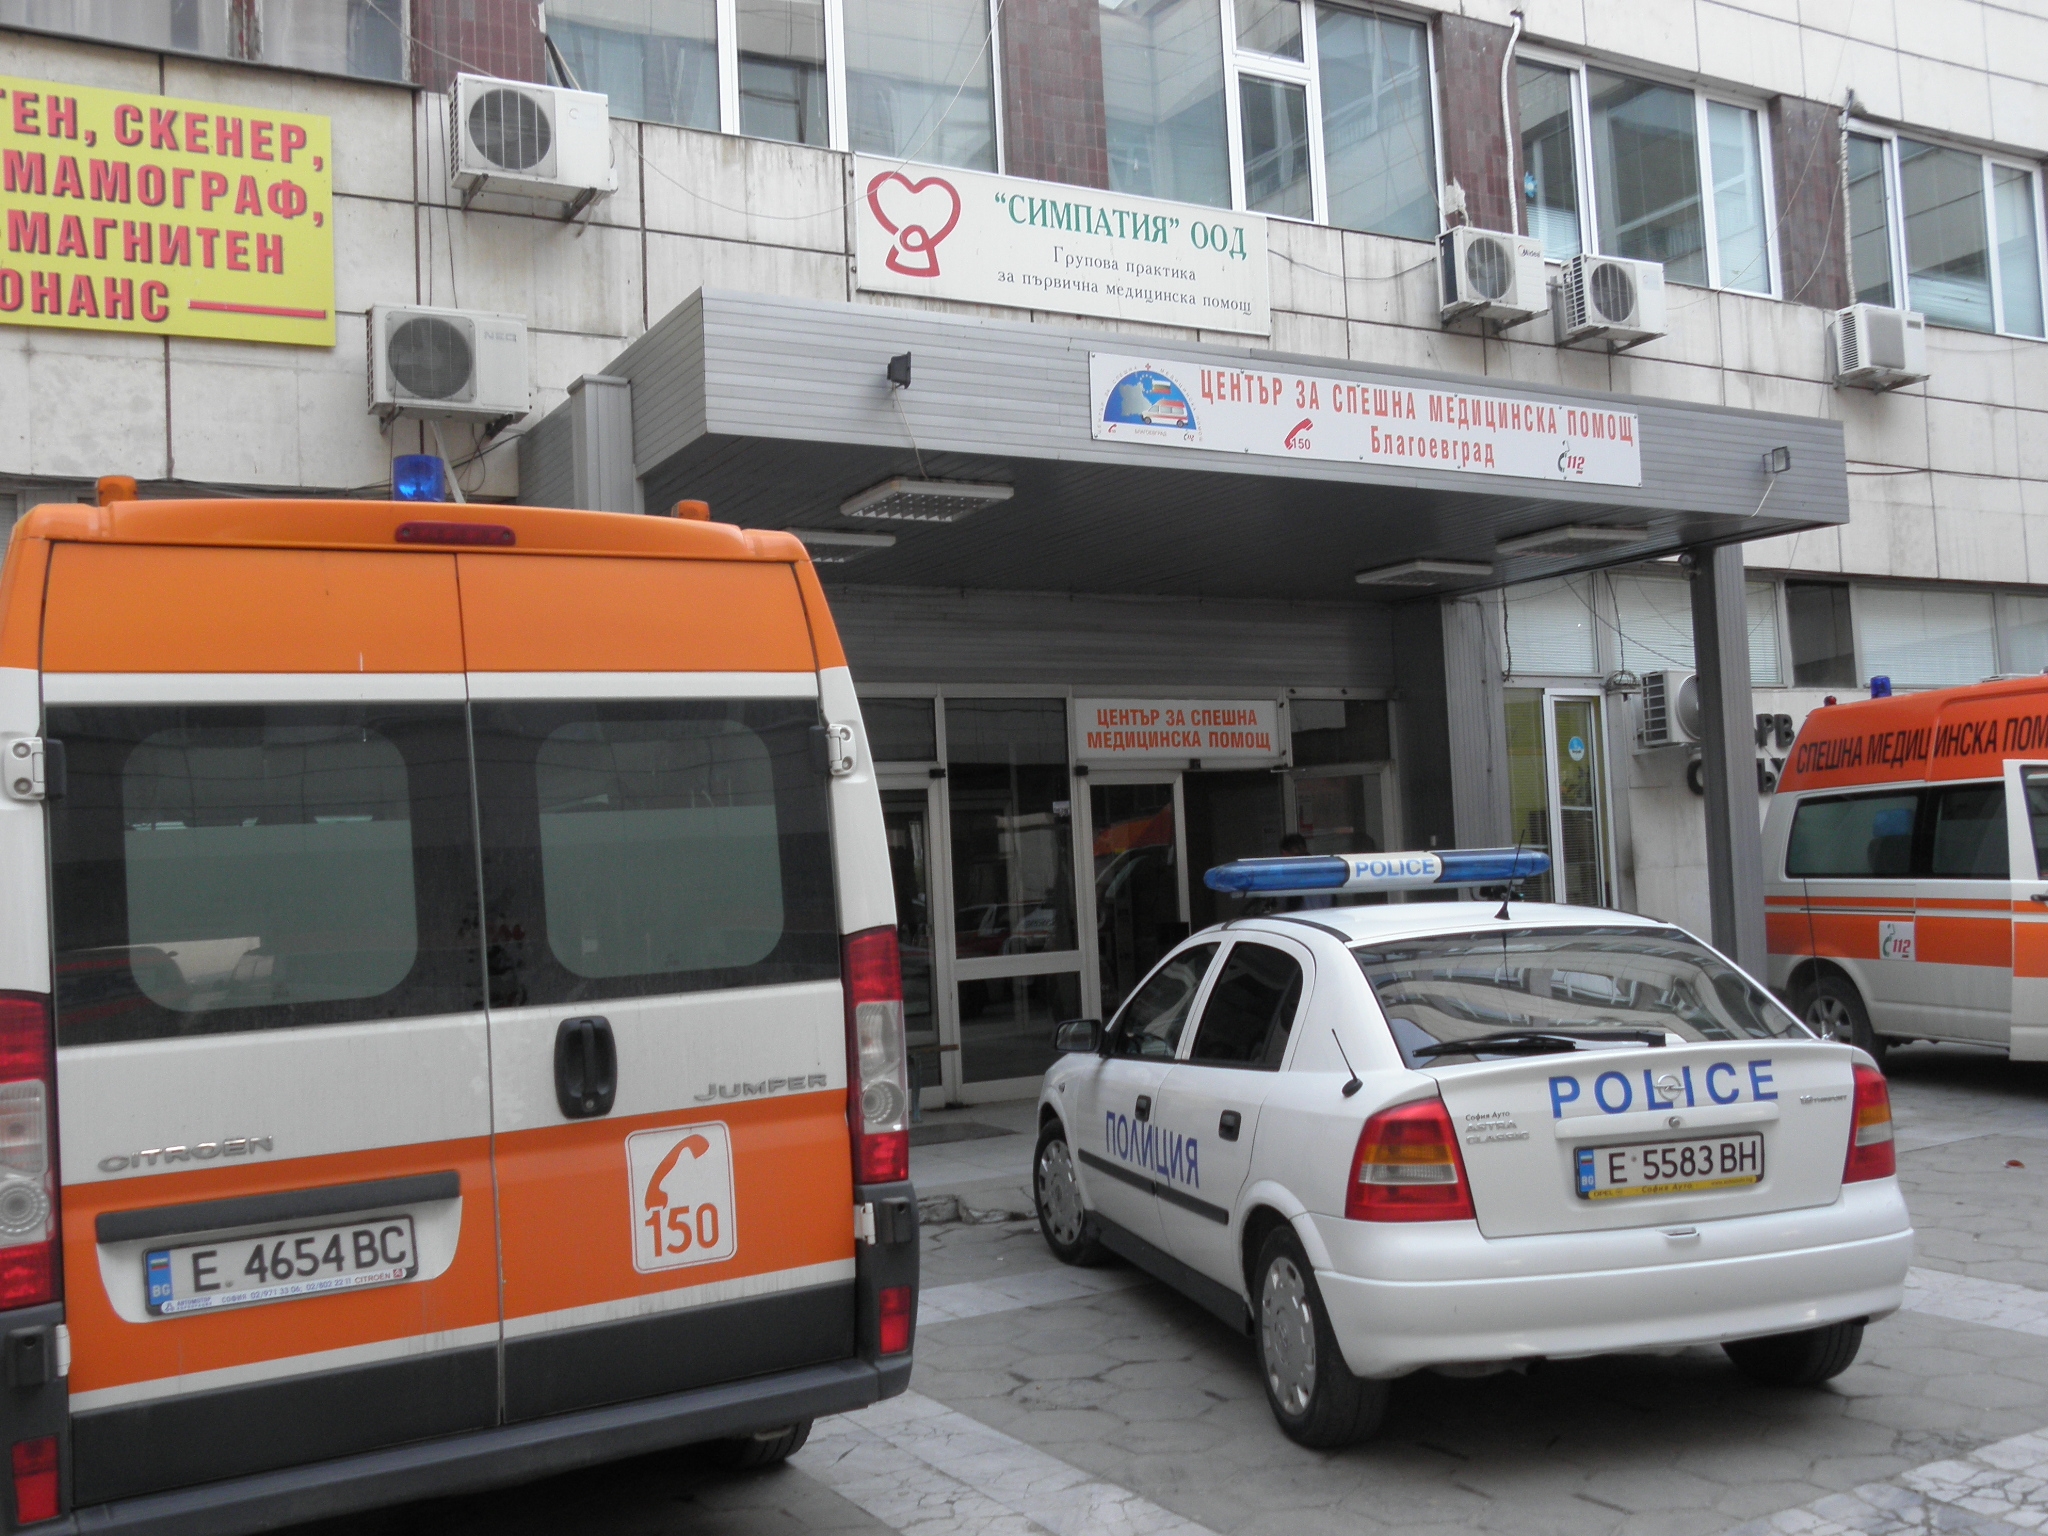 28-годишен мъж почина в дискотека в Благоевград